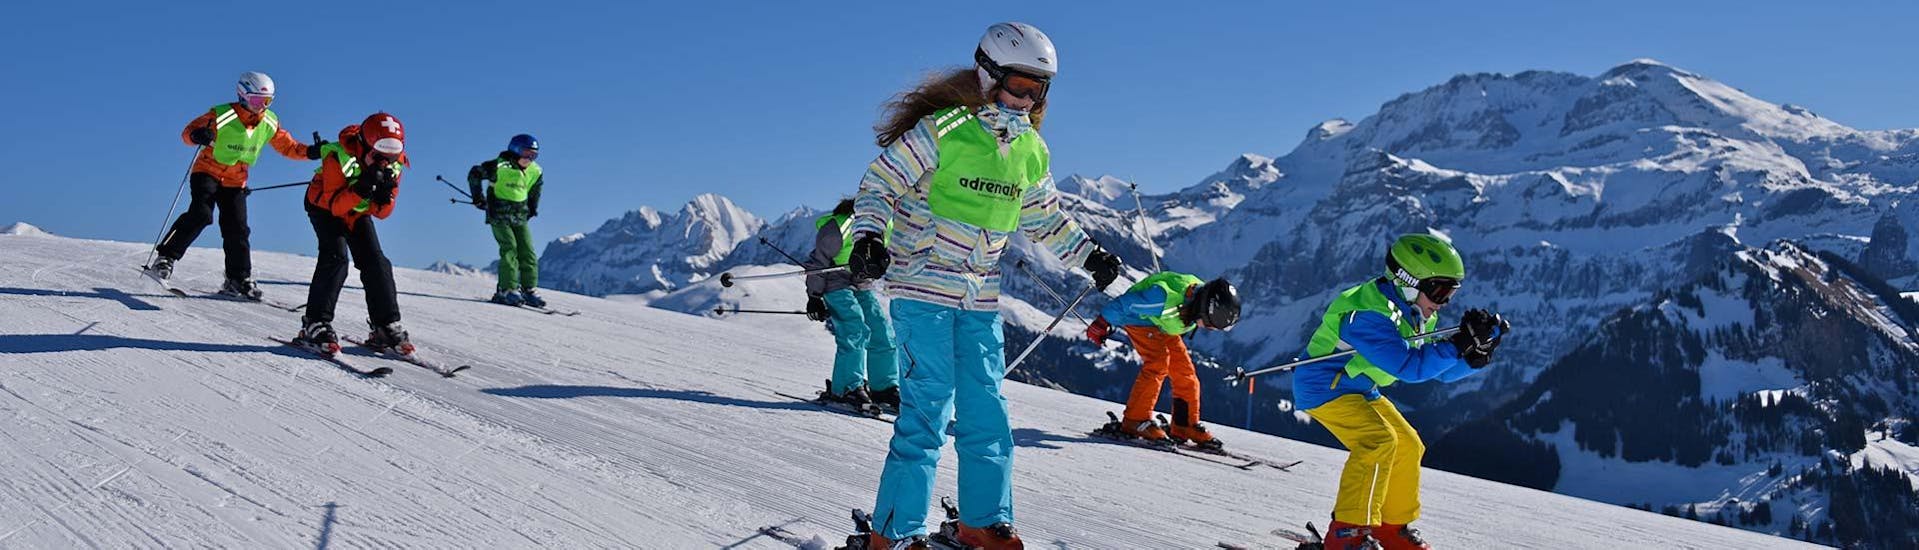 Clases de esquí para niños para todos los niveles.